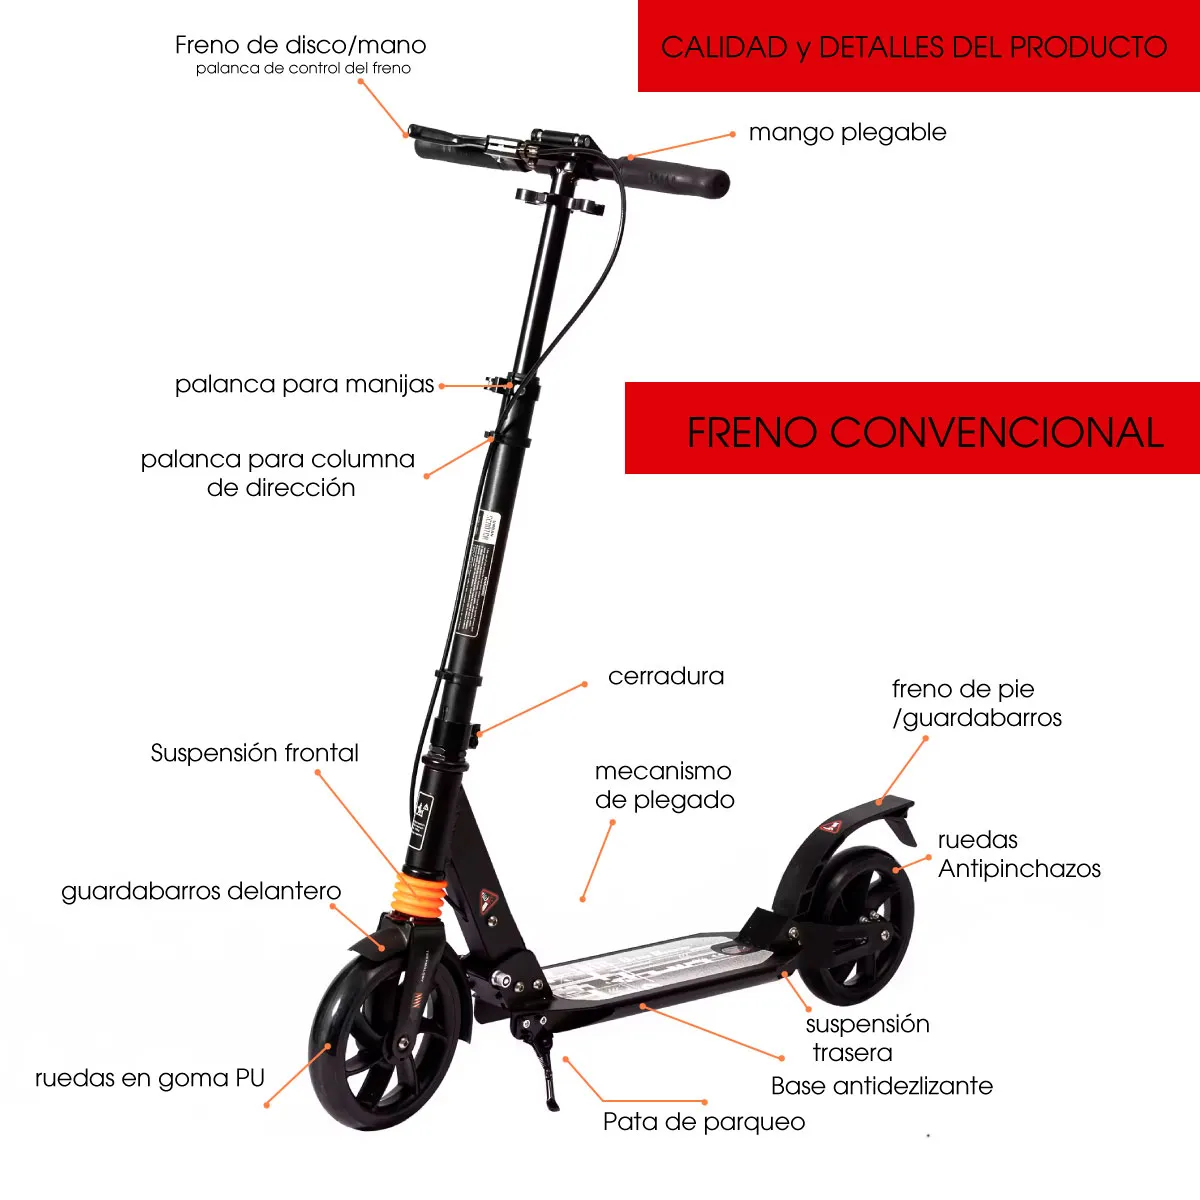 Patineta Urbana Mecánica para adolescentes con ruedas de 20cm, capacidad de 100 kilos con freno convencional.